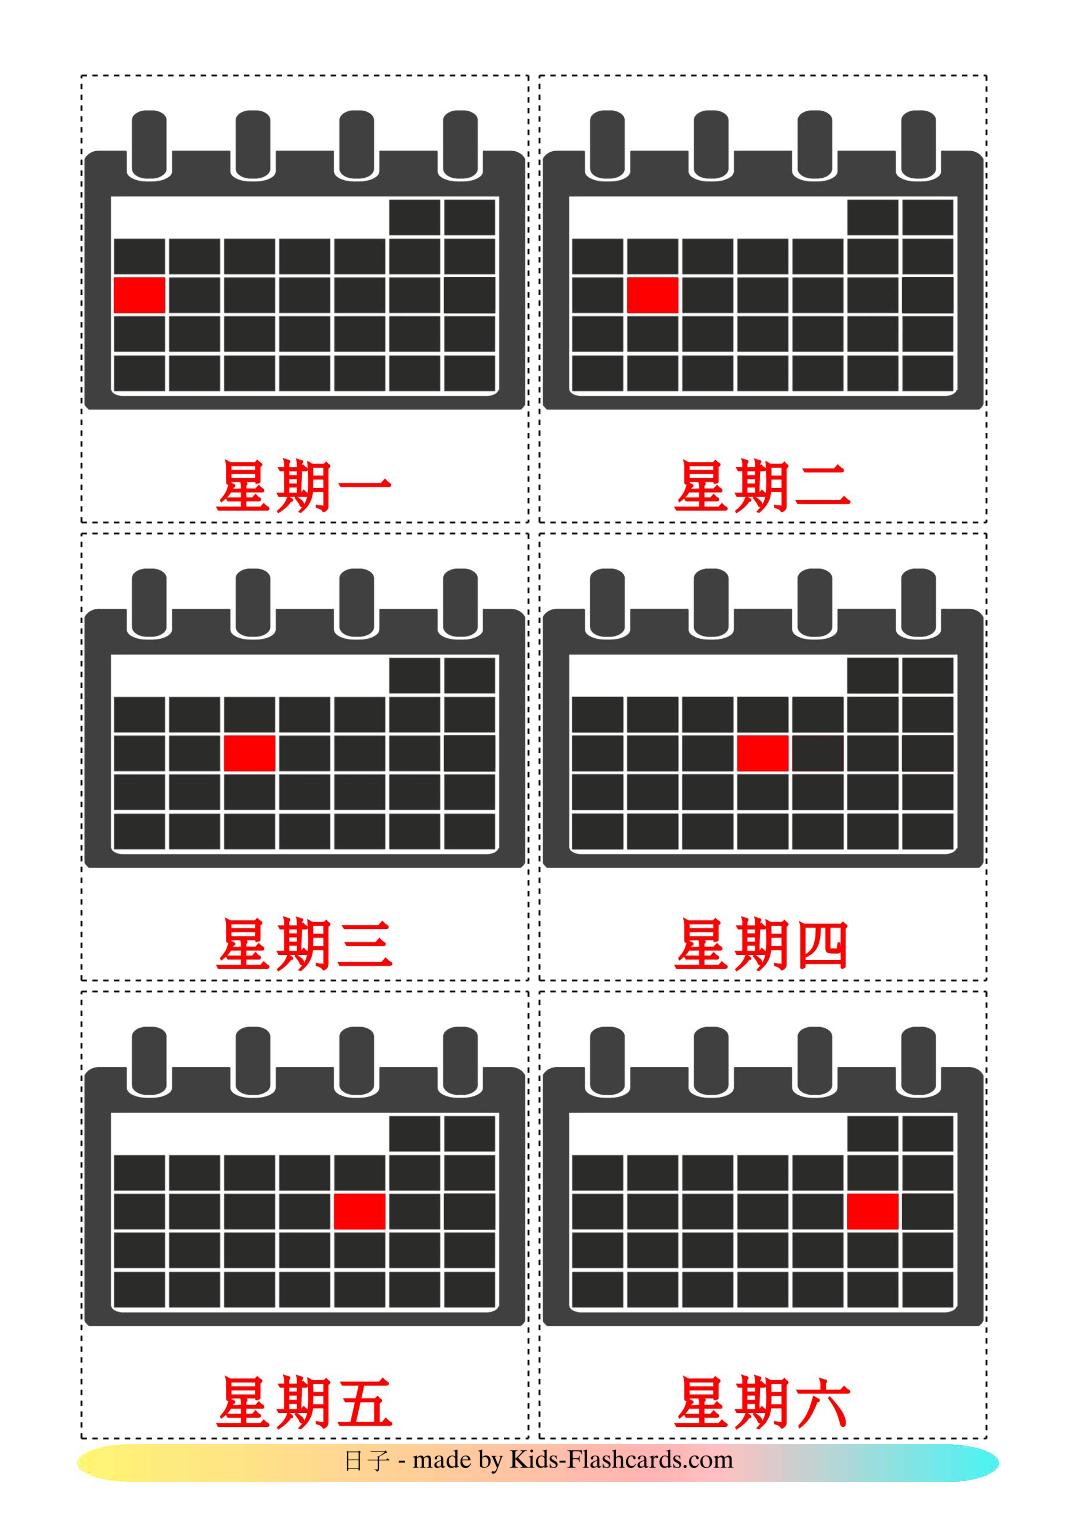 Días de la semana - 12 fichas de chino(tradicional) para imprimir gratis 